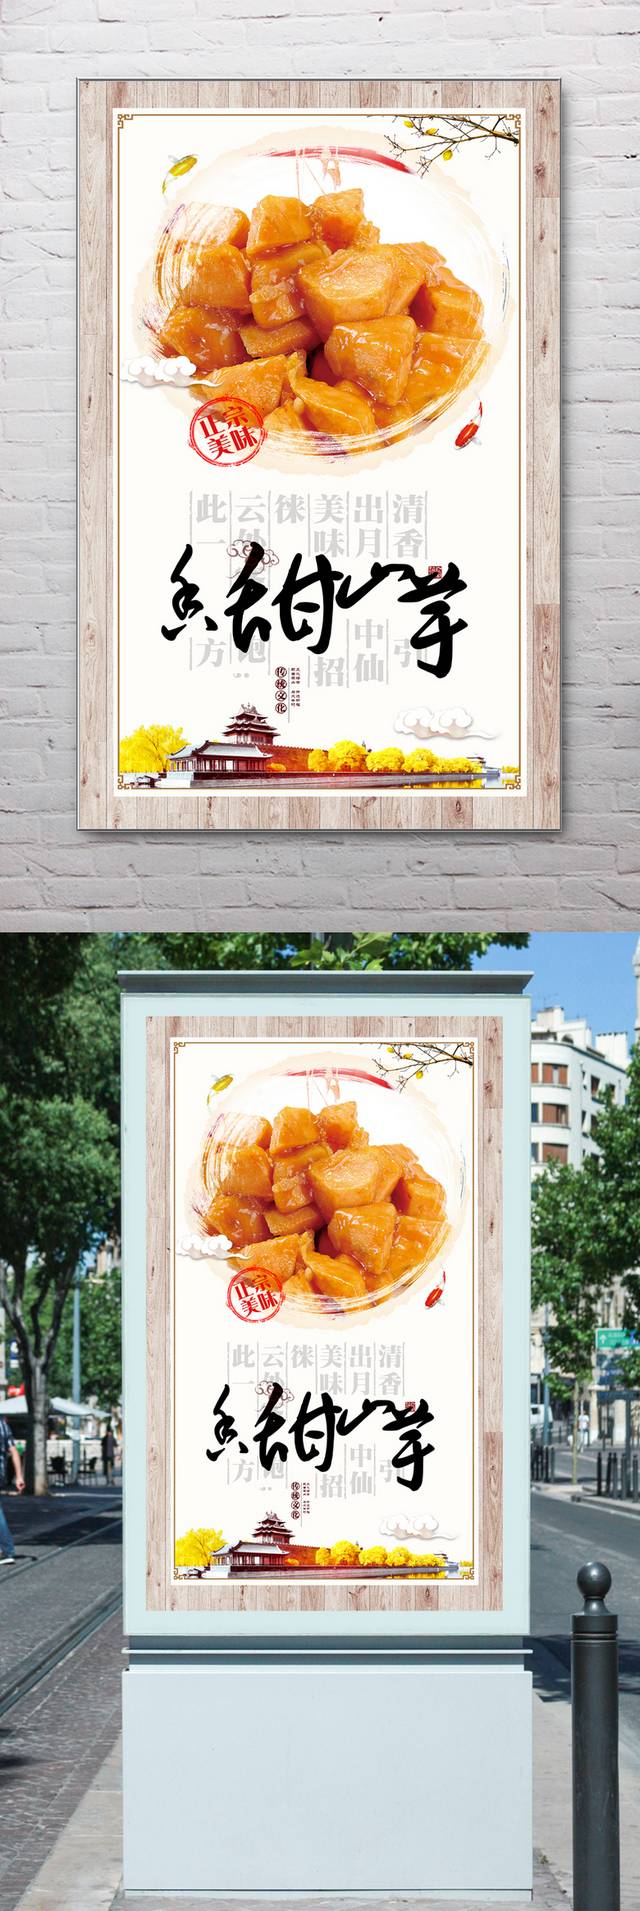 中国风山芋宣传海报设计